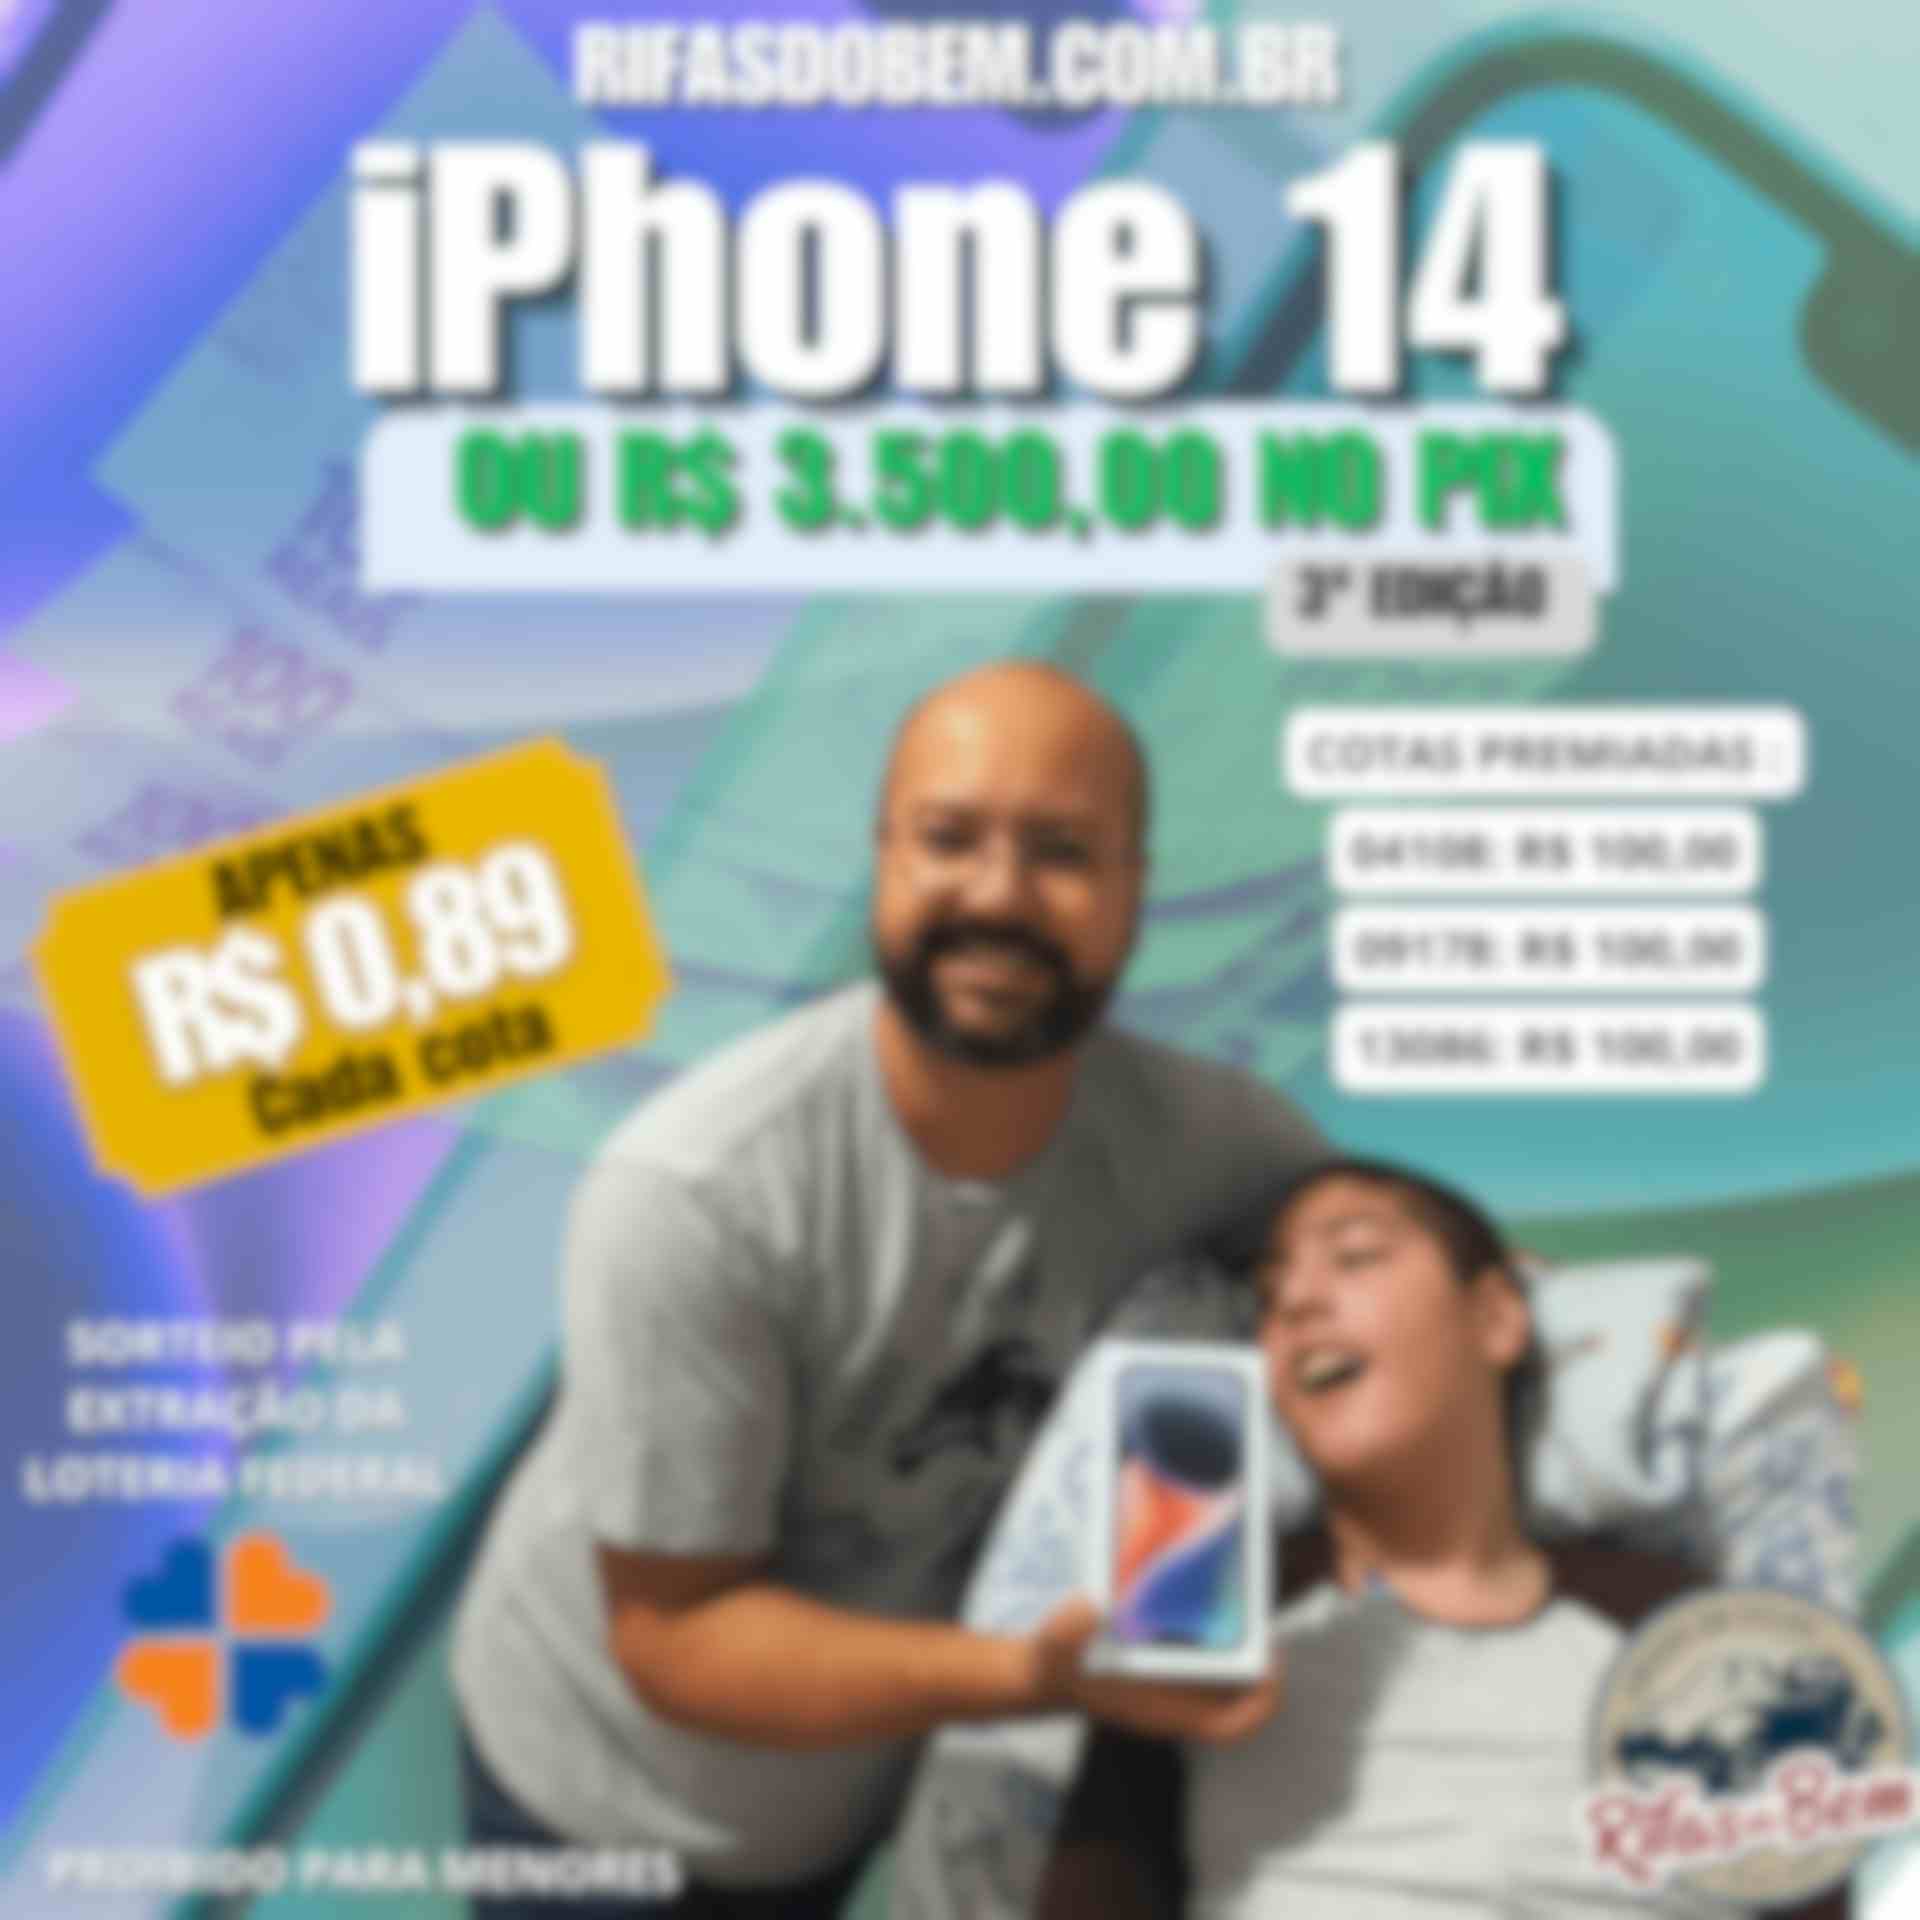 iPhone 14 Blue 128gb ou R$ 3.500,00